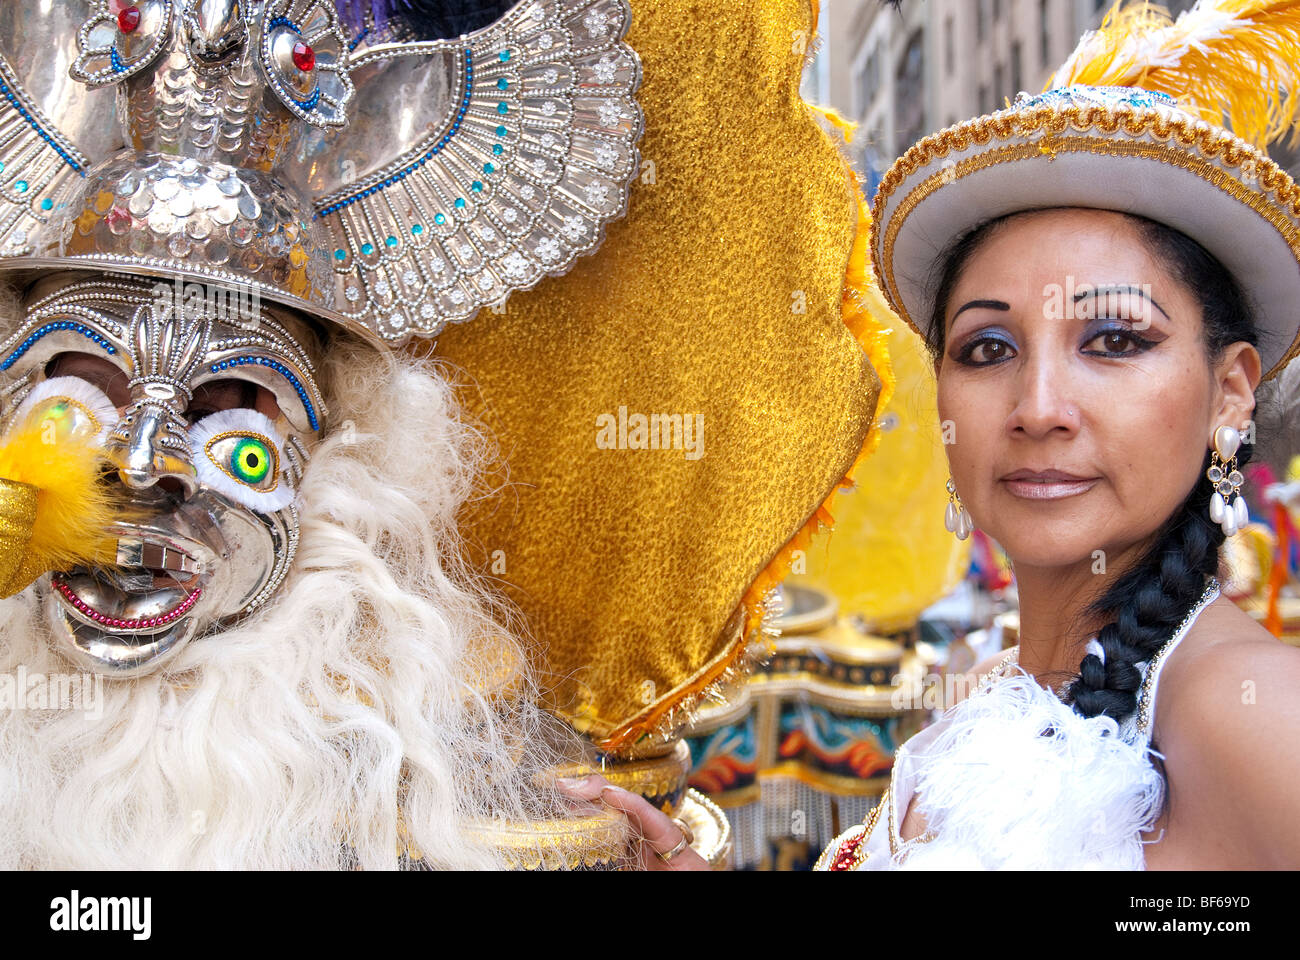 Costume folklorique bolivienne, annuel Hispanic Day Parade sur la 5e Avenue, New York City, la célébration de l'héritage hispanique Banque D'Images